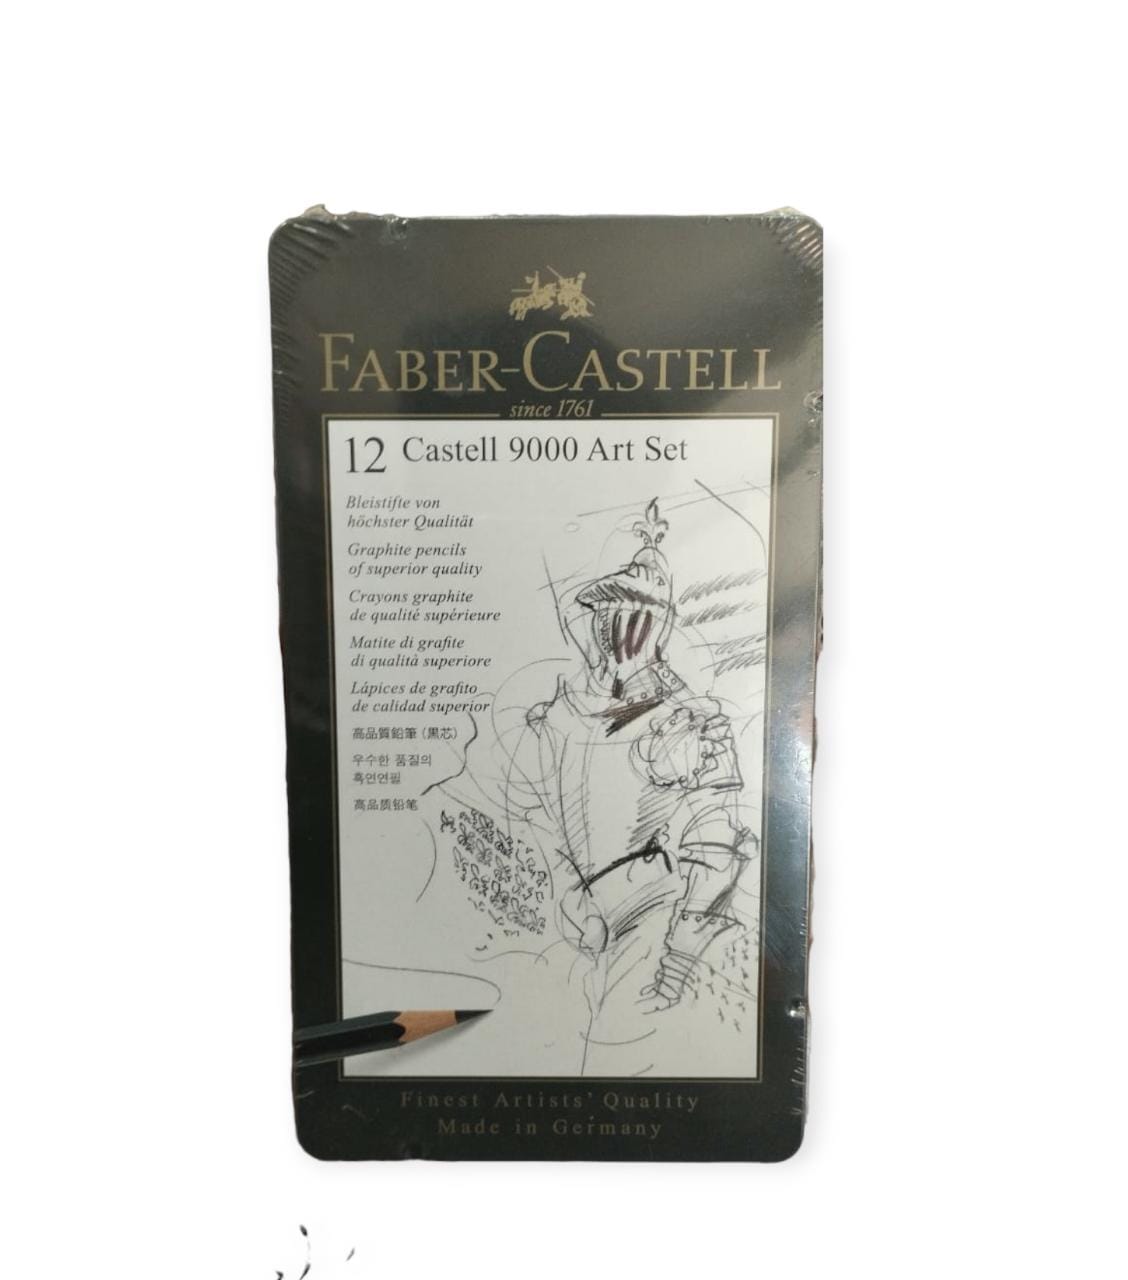 Faber Castell art set 